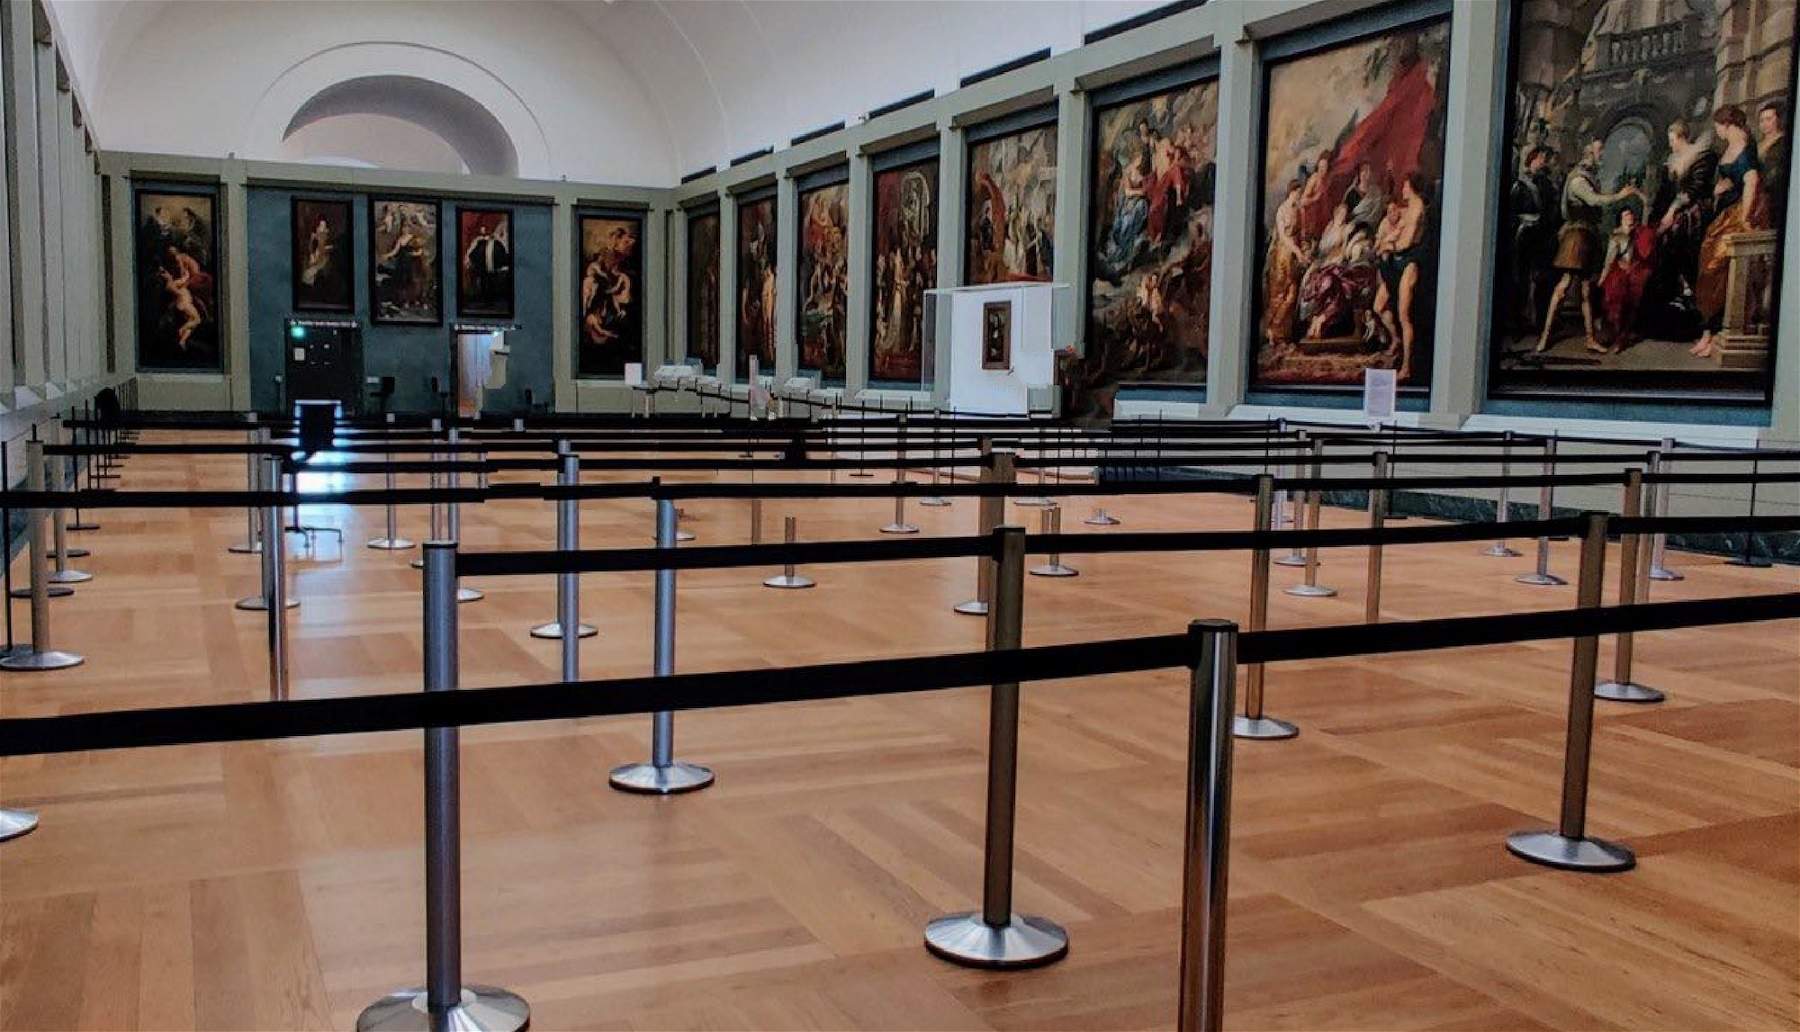 Le Louvre comme Disneyland : les files d'attente pour voir la Joconde se font dans un parcours transnational. Et la sécurité ? 